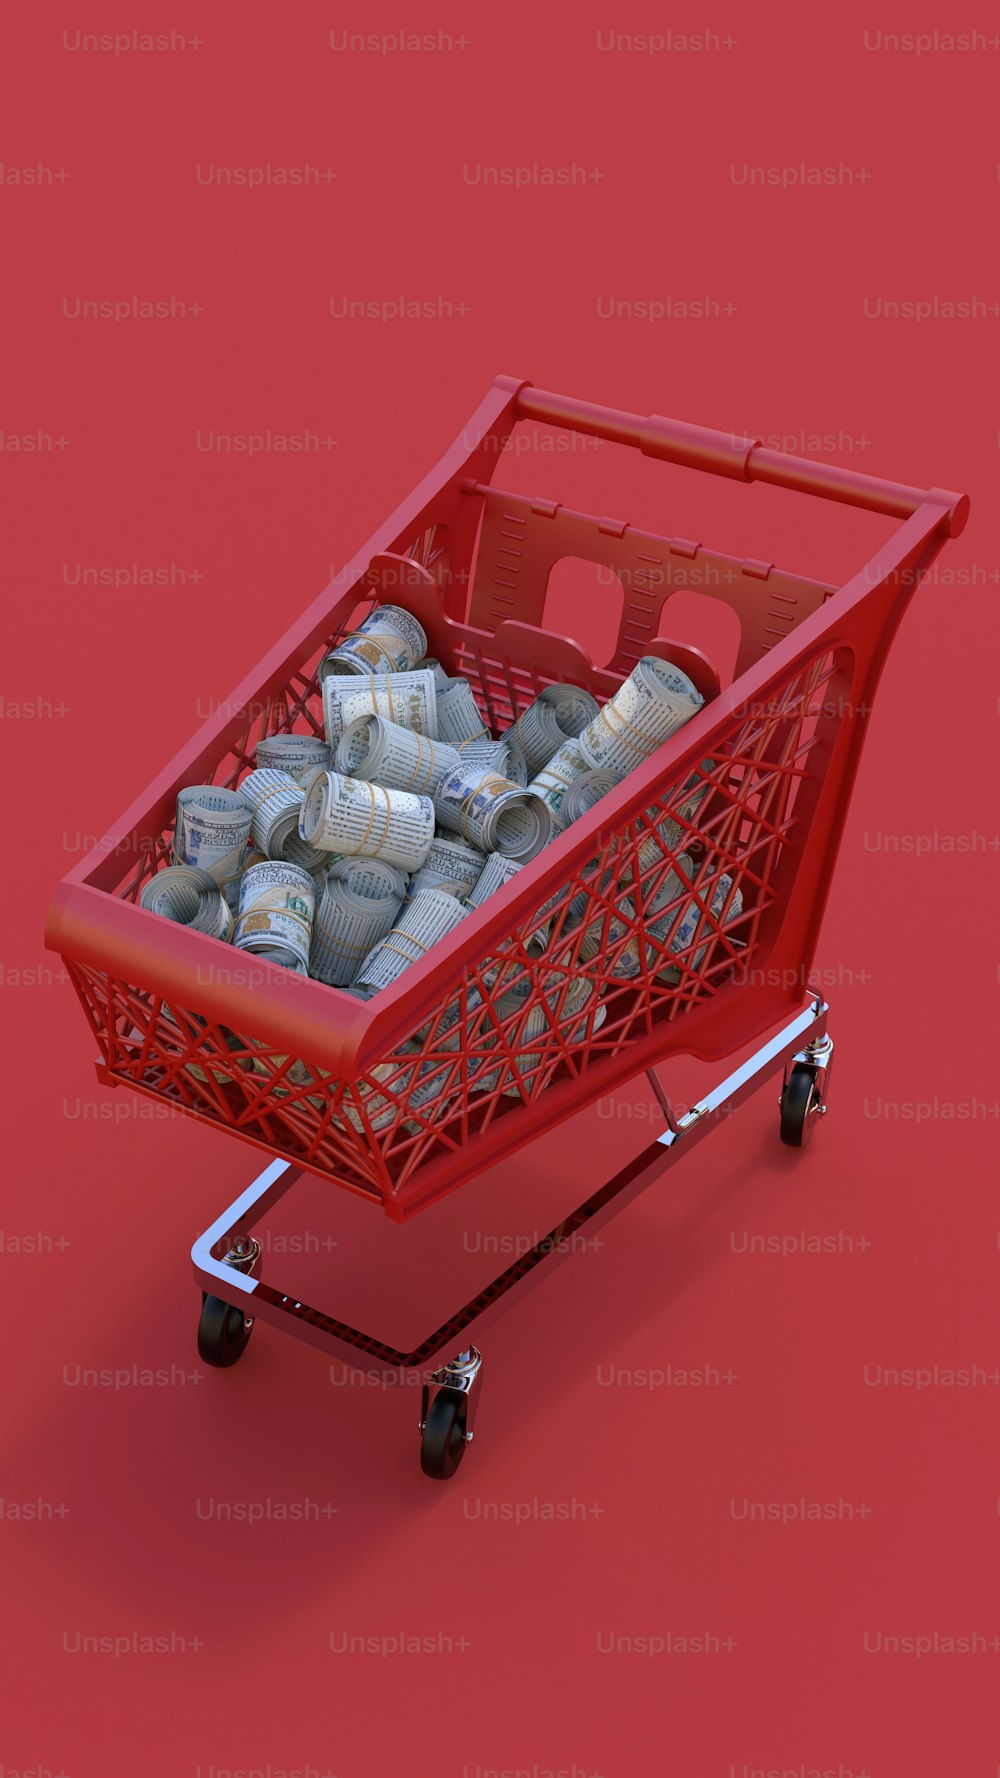 Un carrito de compras rojo lleno de objetos plateados